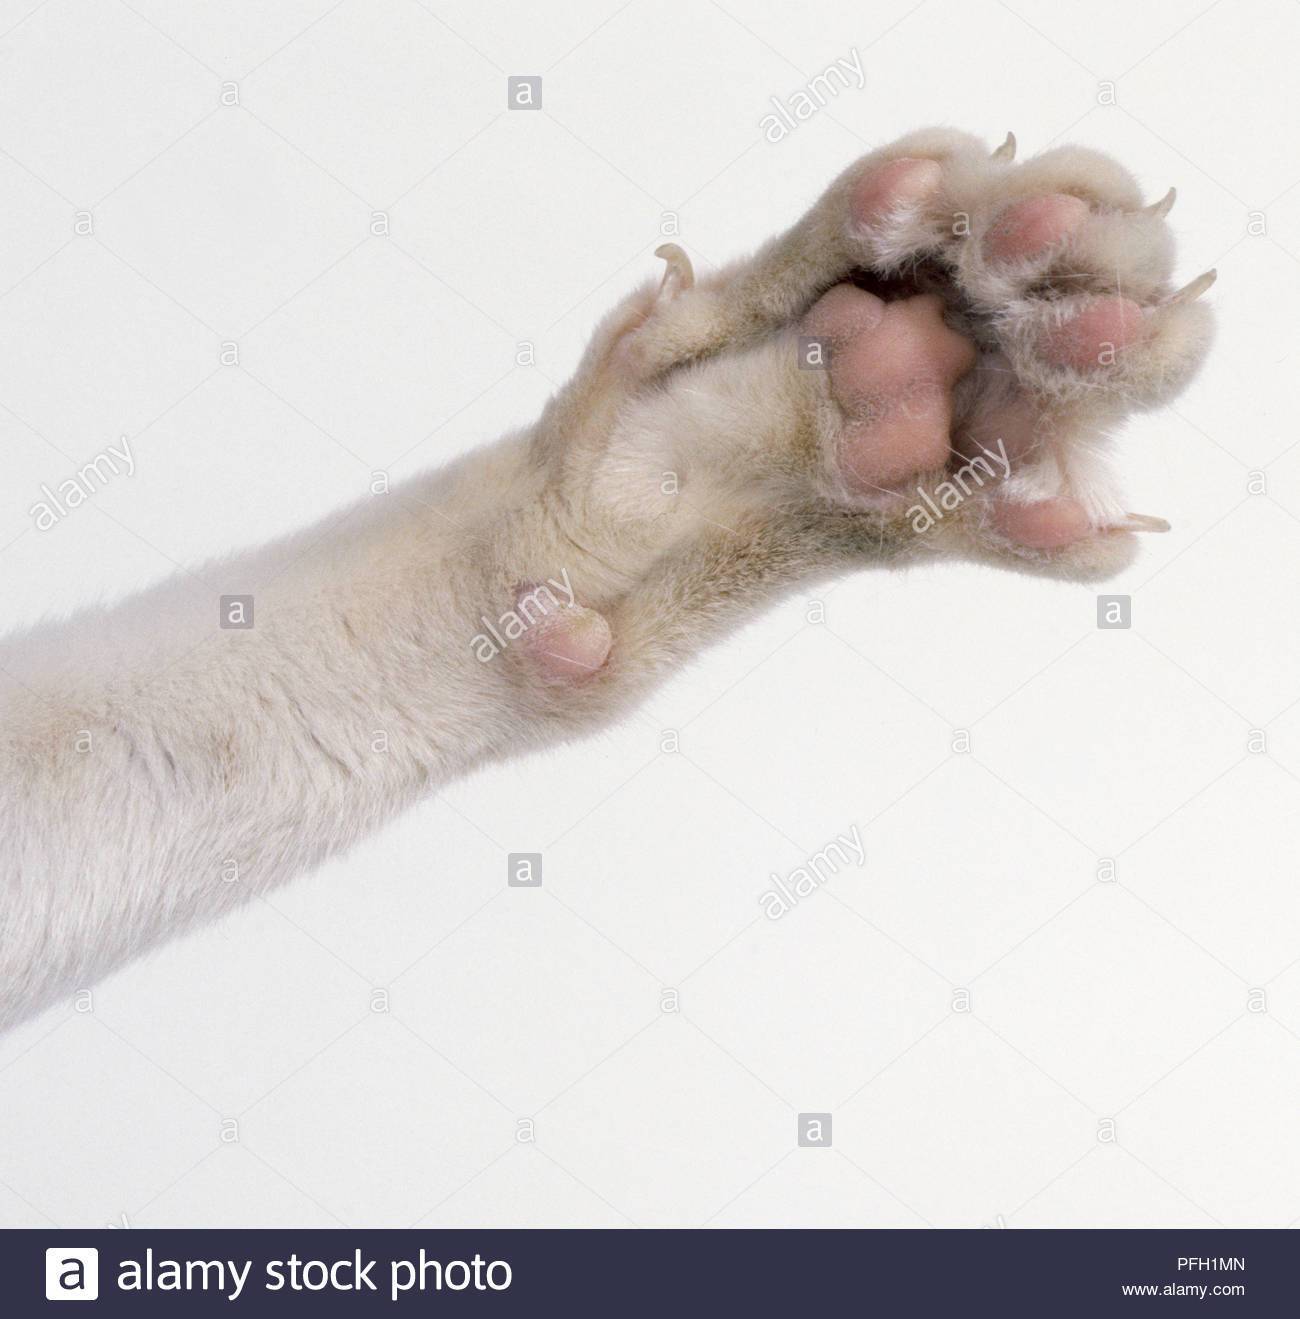 Какое количество пальцев считается нормой у кошек на передних и задних лапах